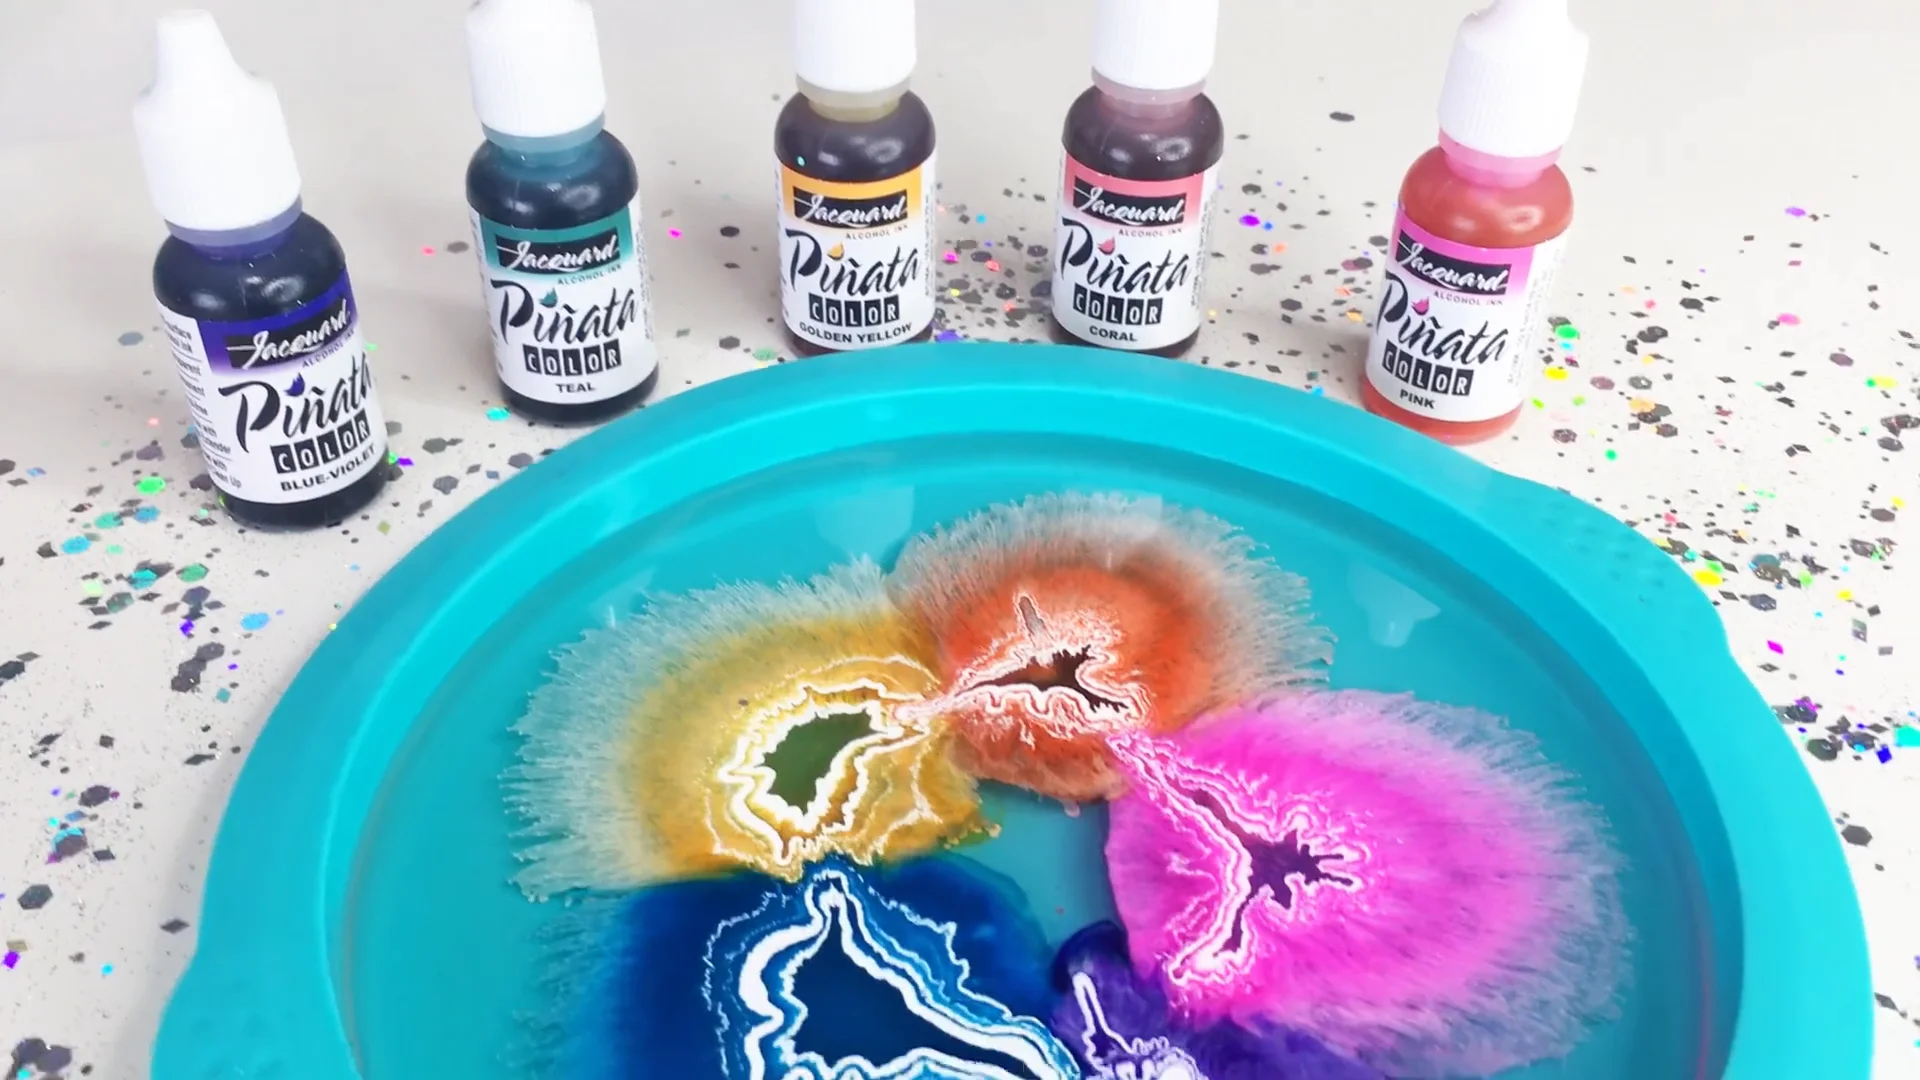 Coral Pinata Ink - Alcohol Inks - Artworx Art Supplies